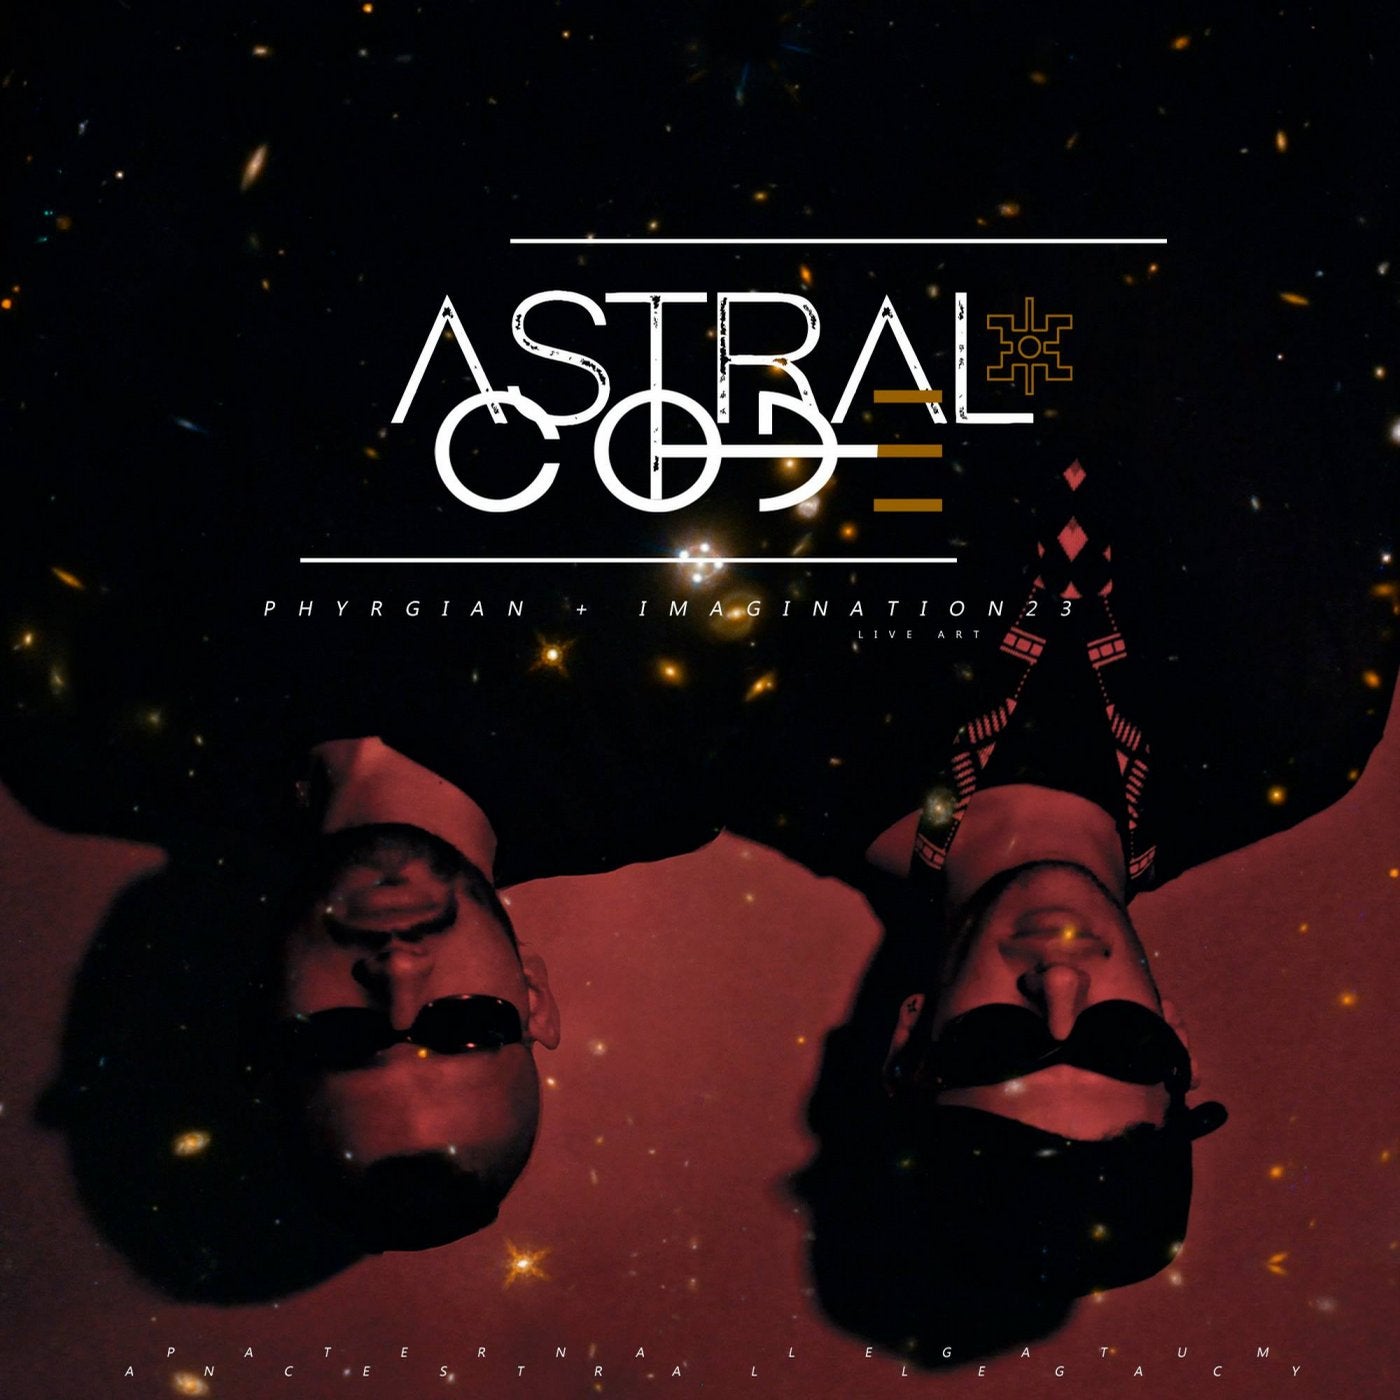 Astral Code ALBUM